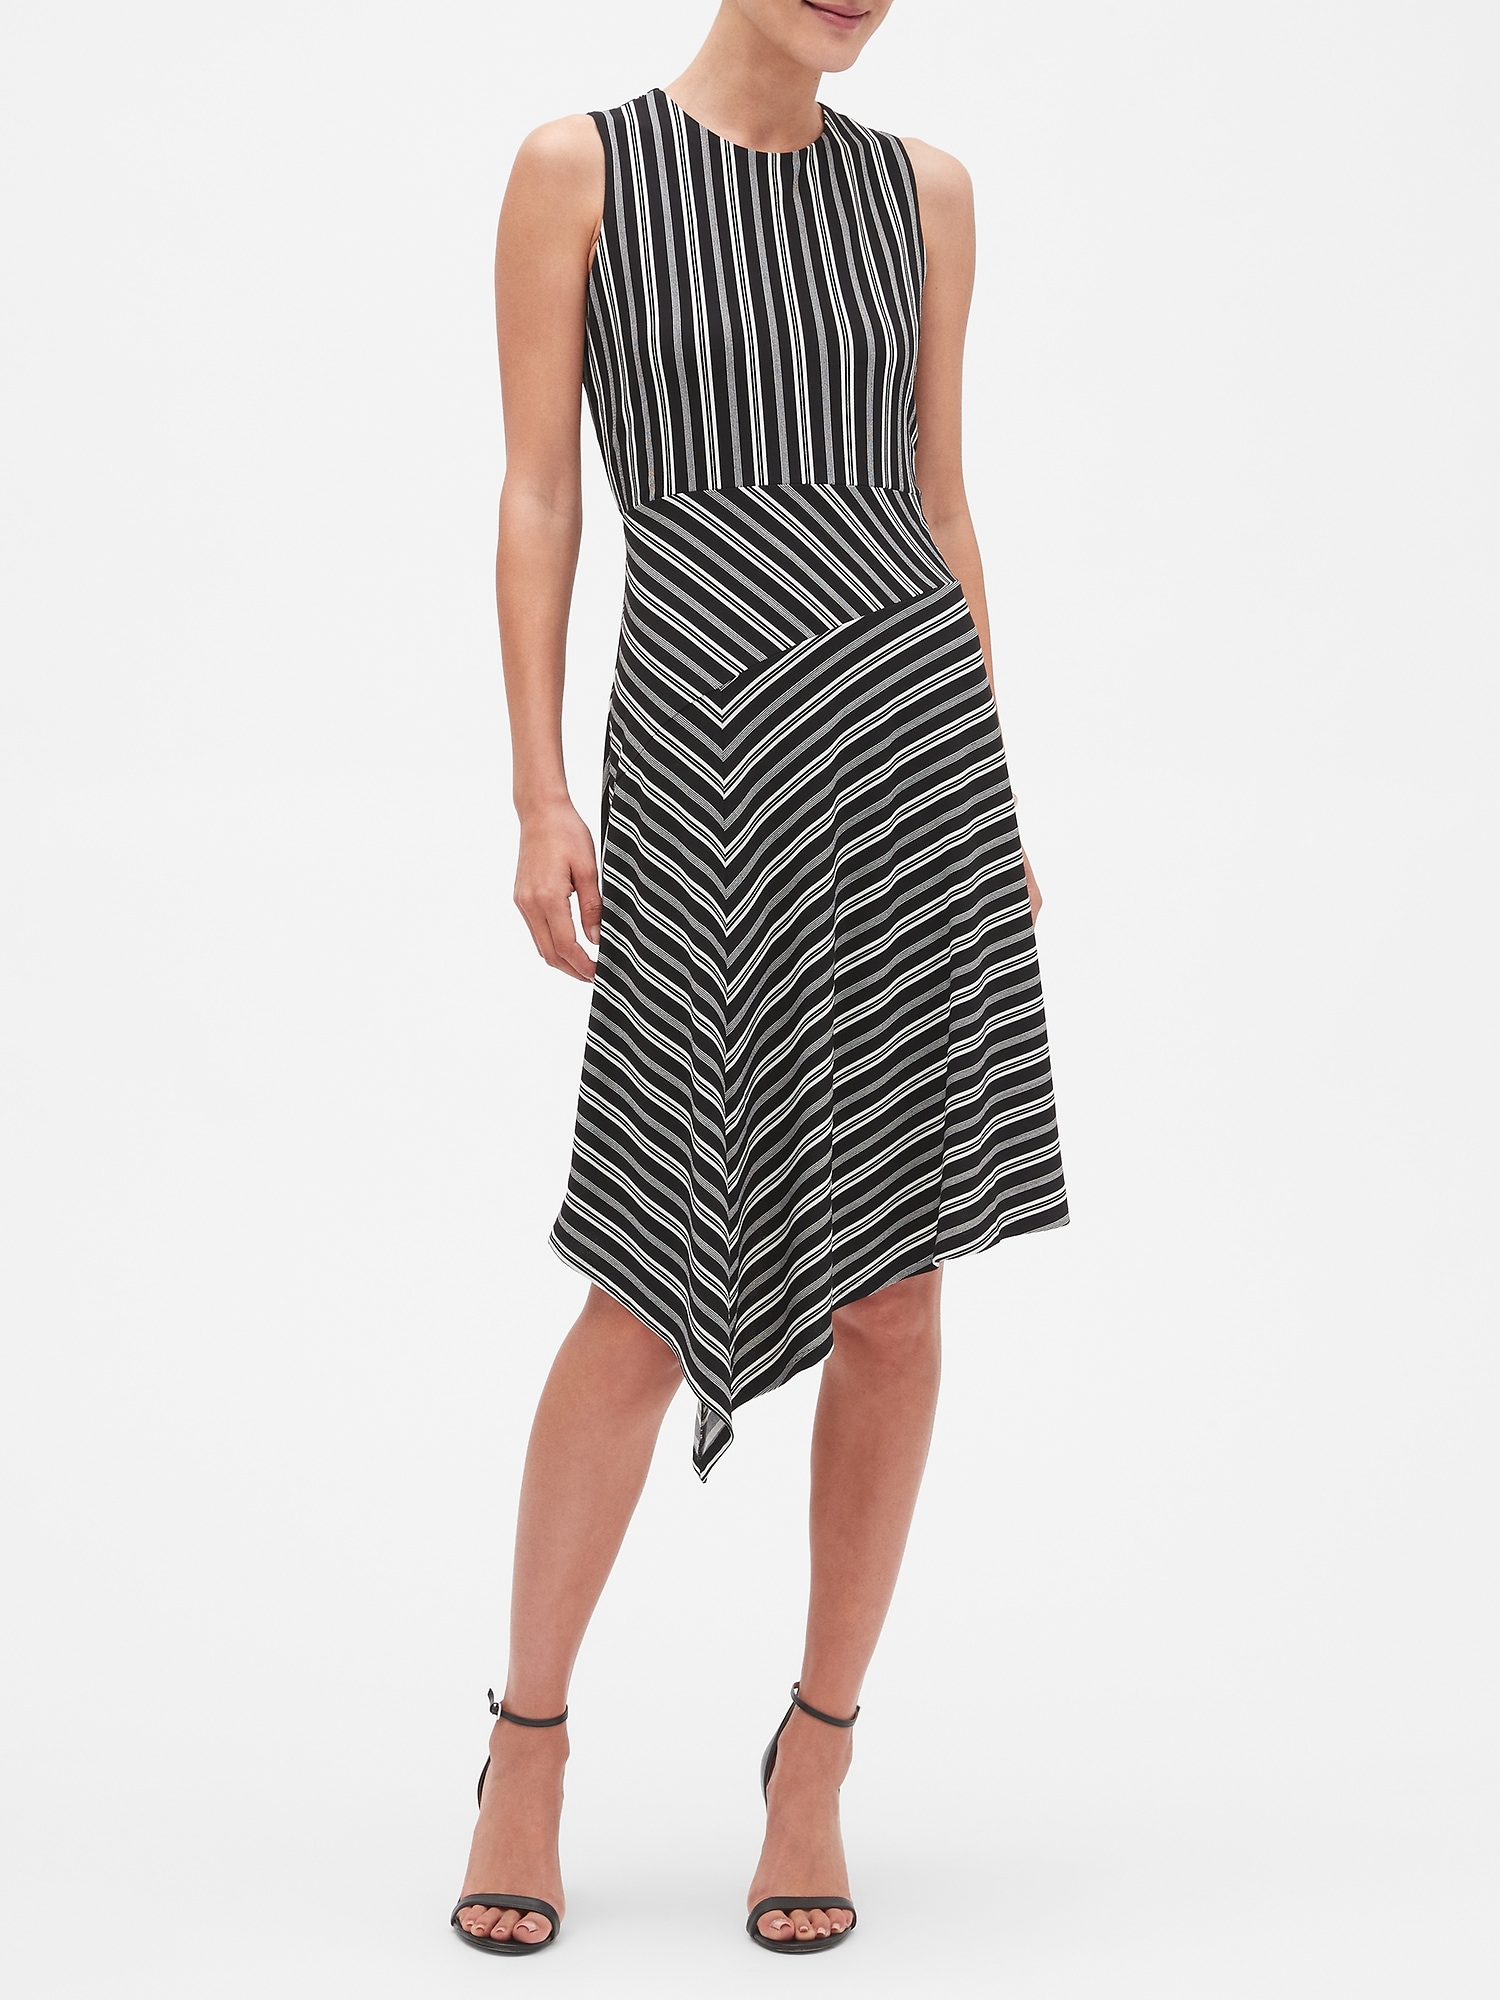 Petite Stripe Asymmetrical Shift Dress | Banana Republic Factory